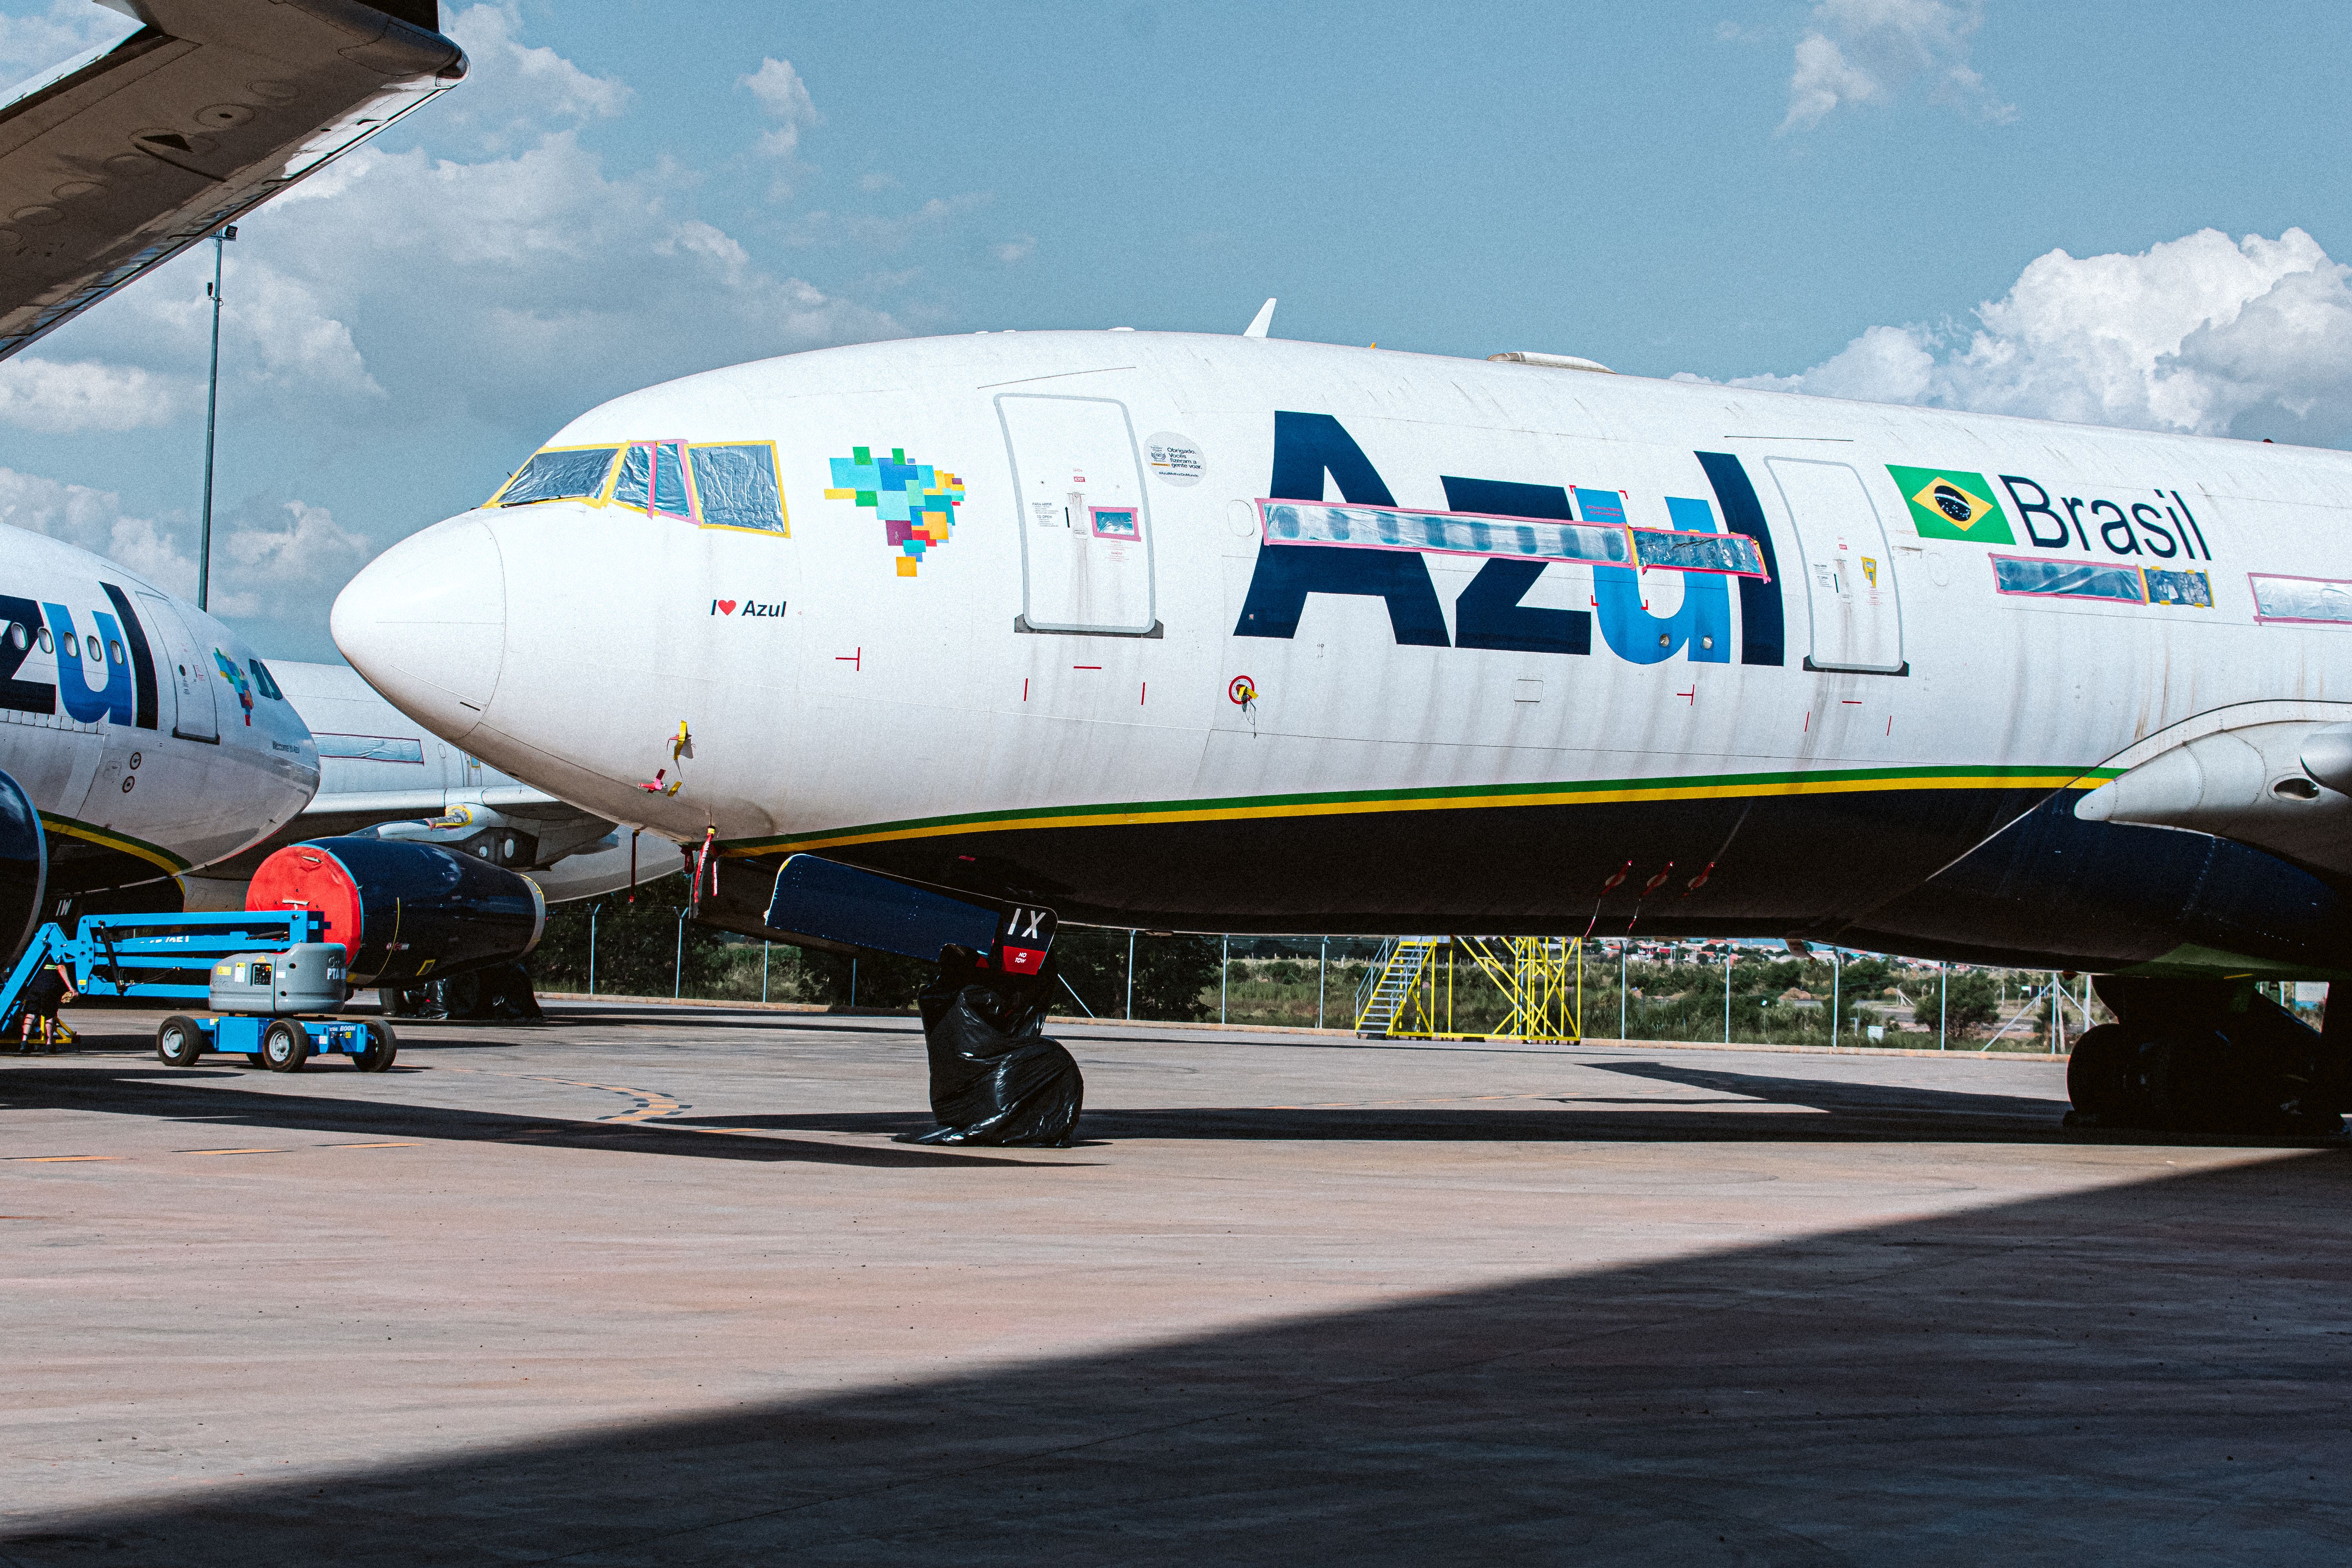 Azul Airbus A330-200 parked at its MRO Hangar VCP